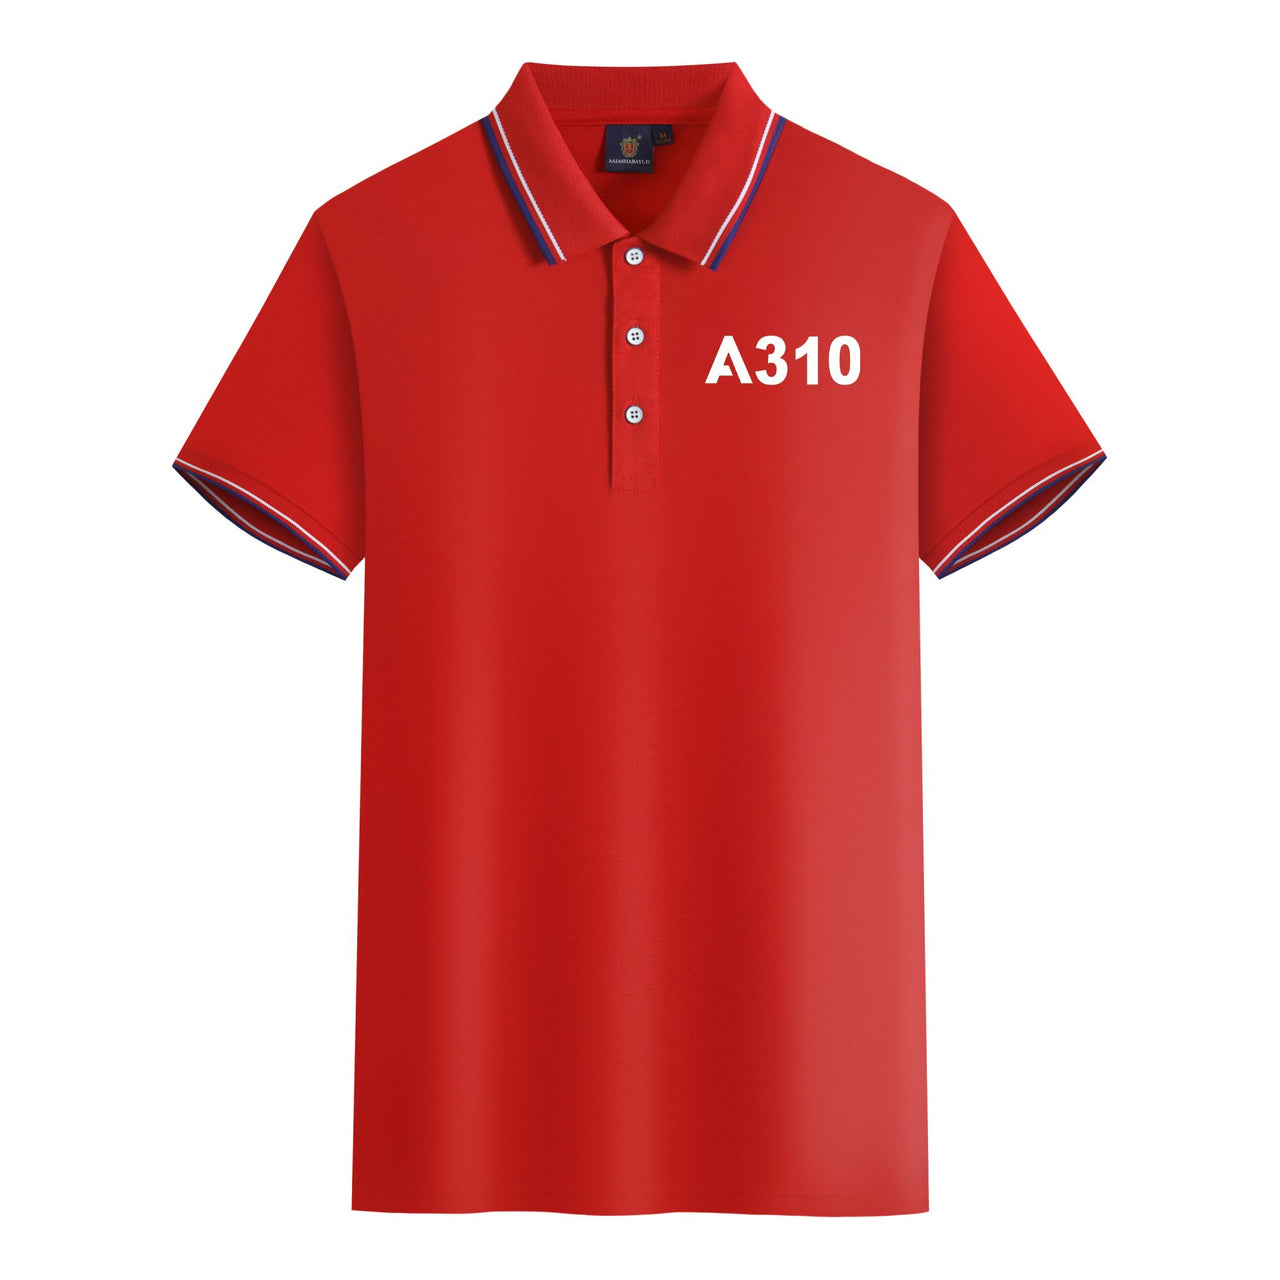 A310 Flat Text Designed Stylish Polo T-Shirts